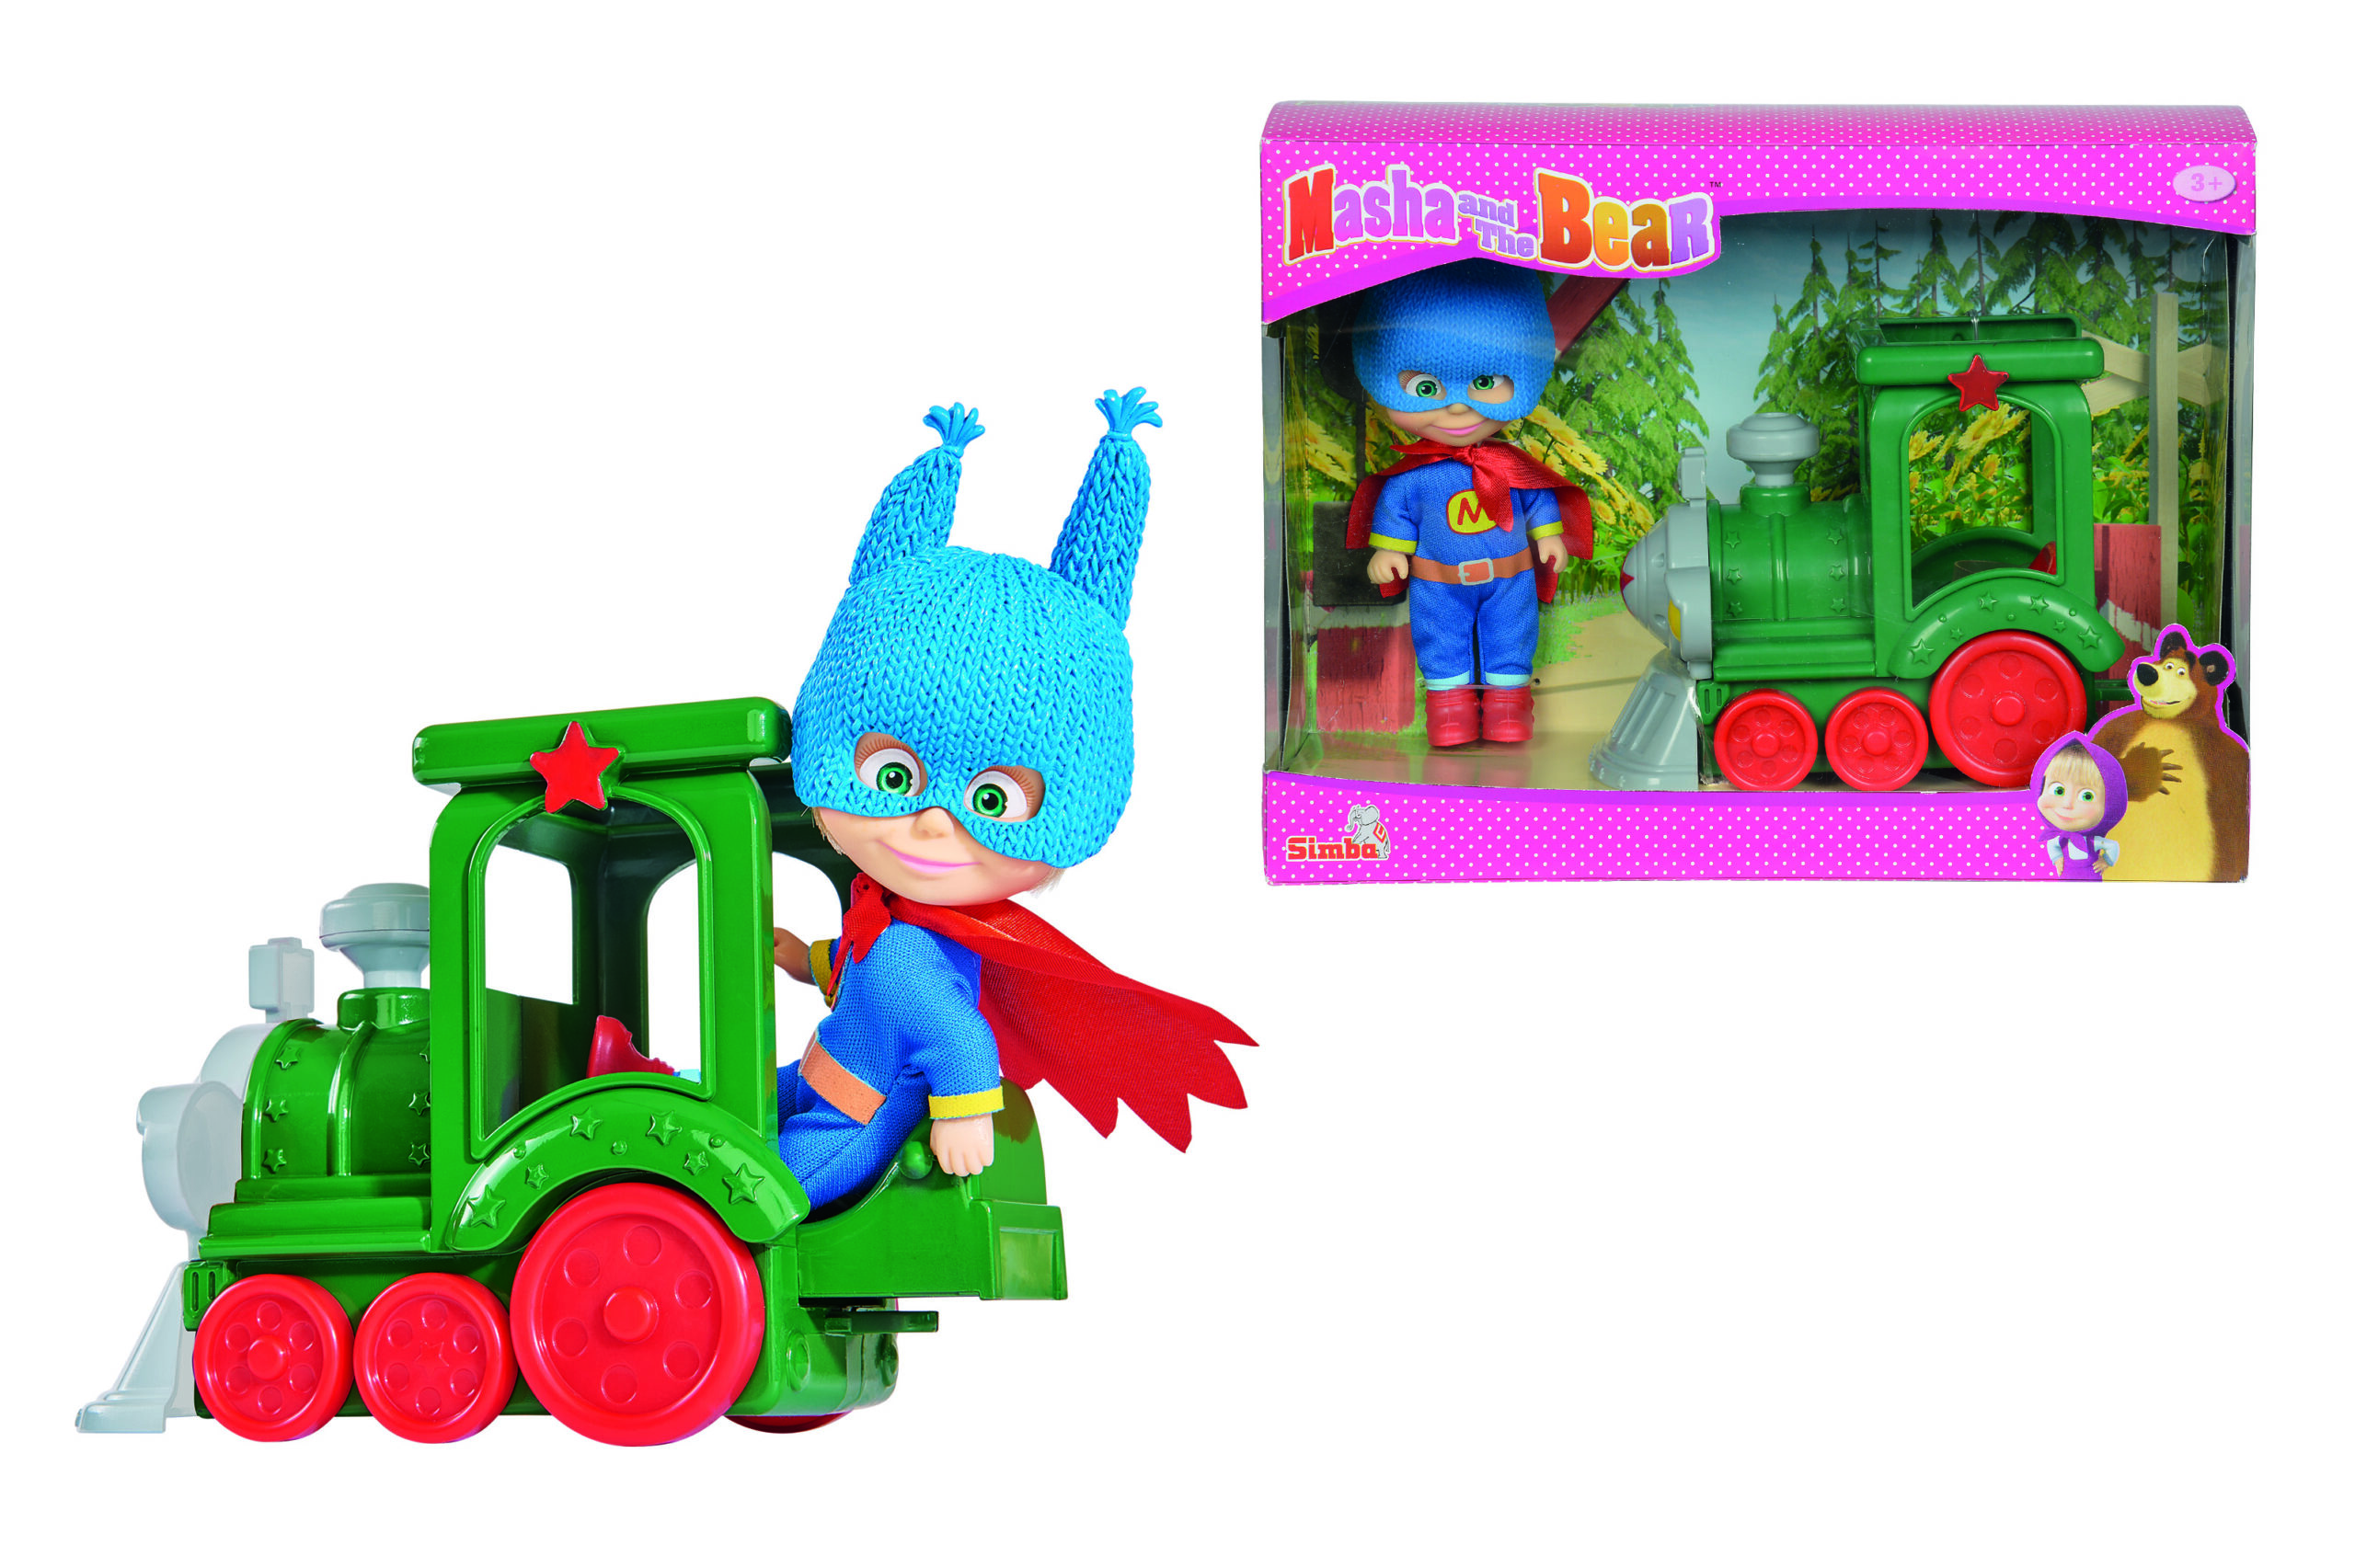 Simba Masha Superhero With Train - 9302119